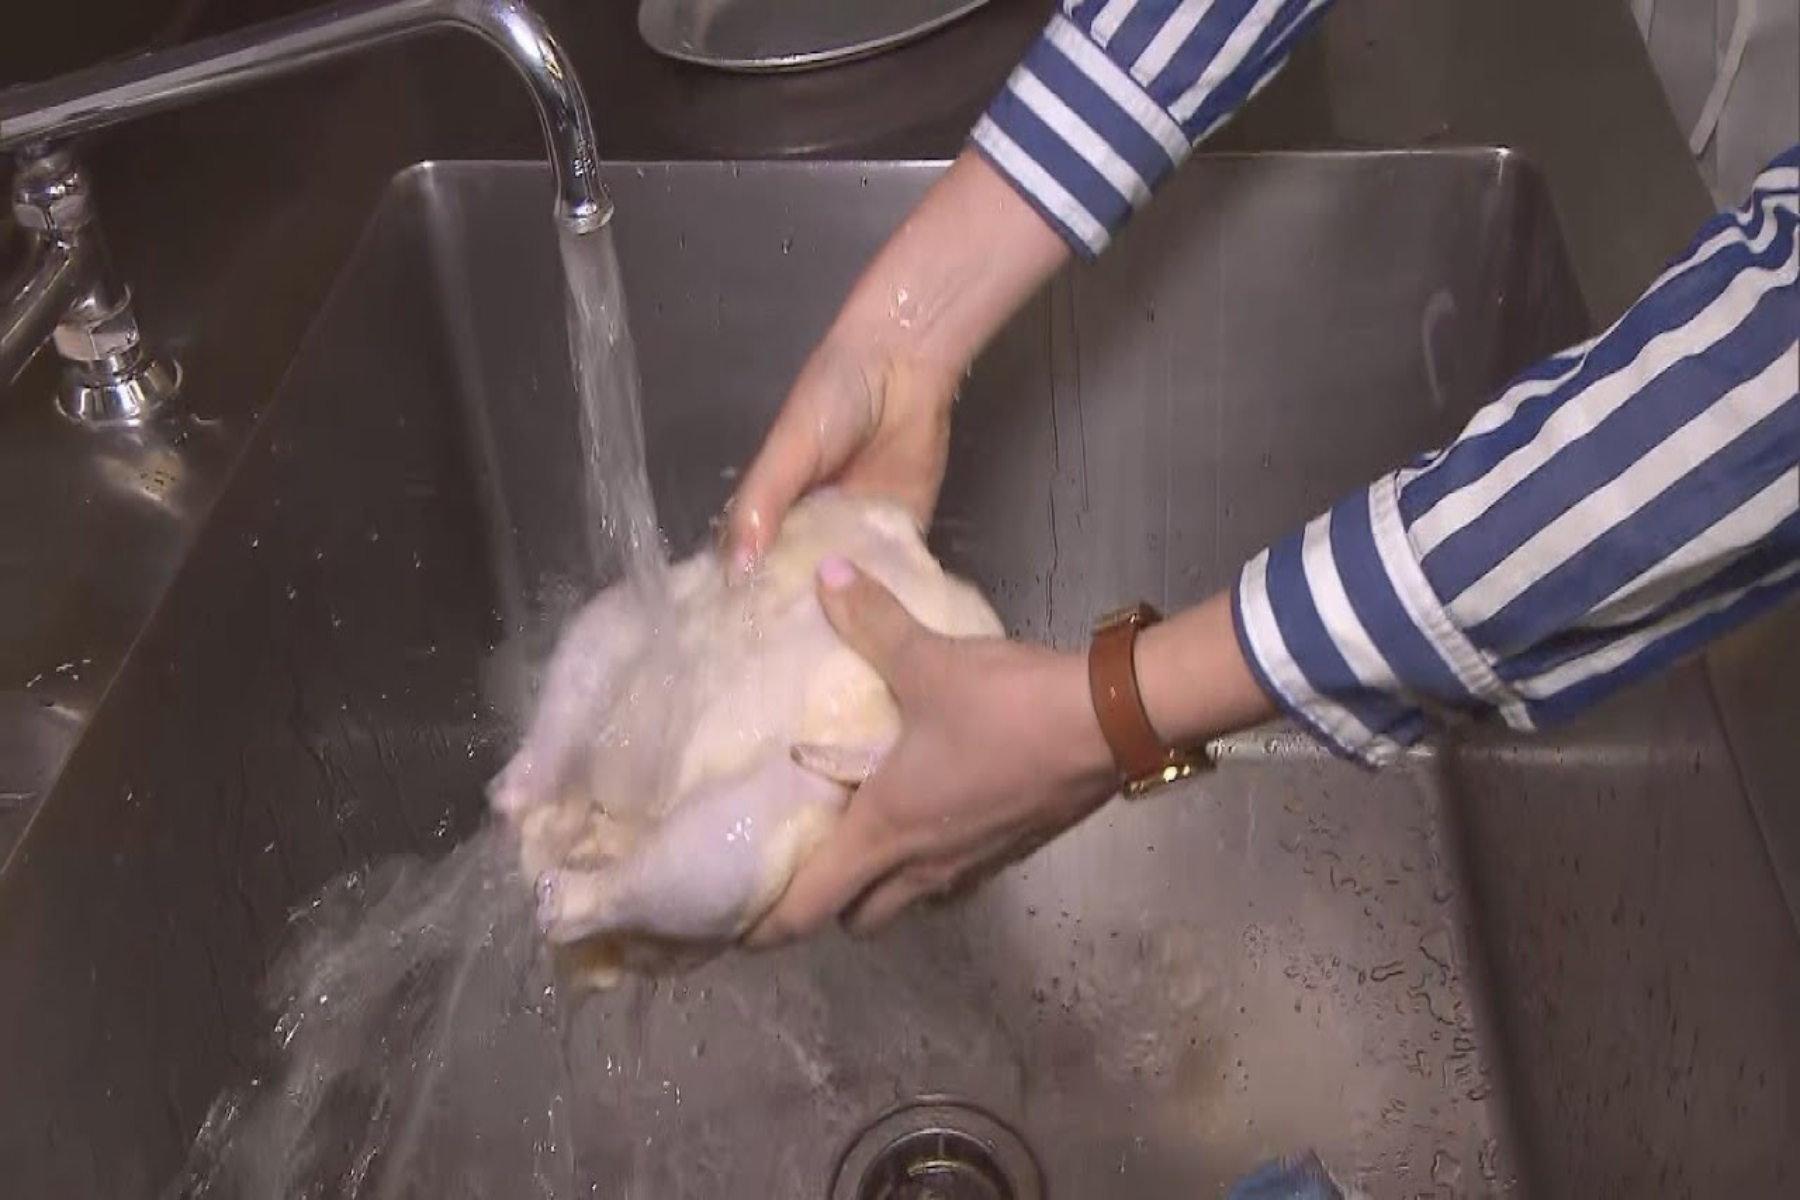 Ωμό κοτόπουλο: To πλύσιμο του ωμού κοτόπουλου πριν το μαγείρεμα είναι μεγάλο λάθος